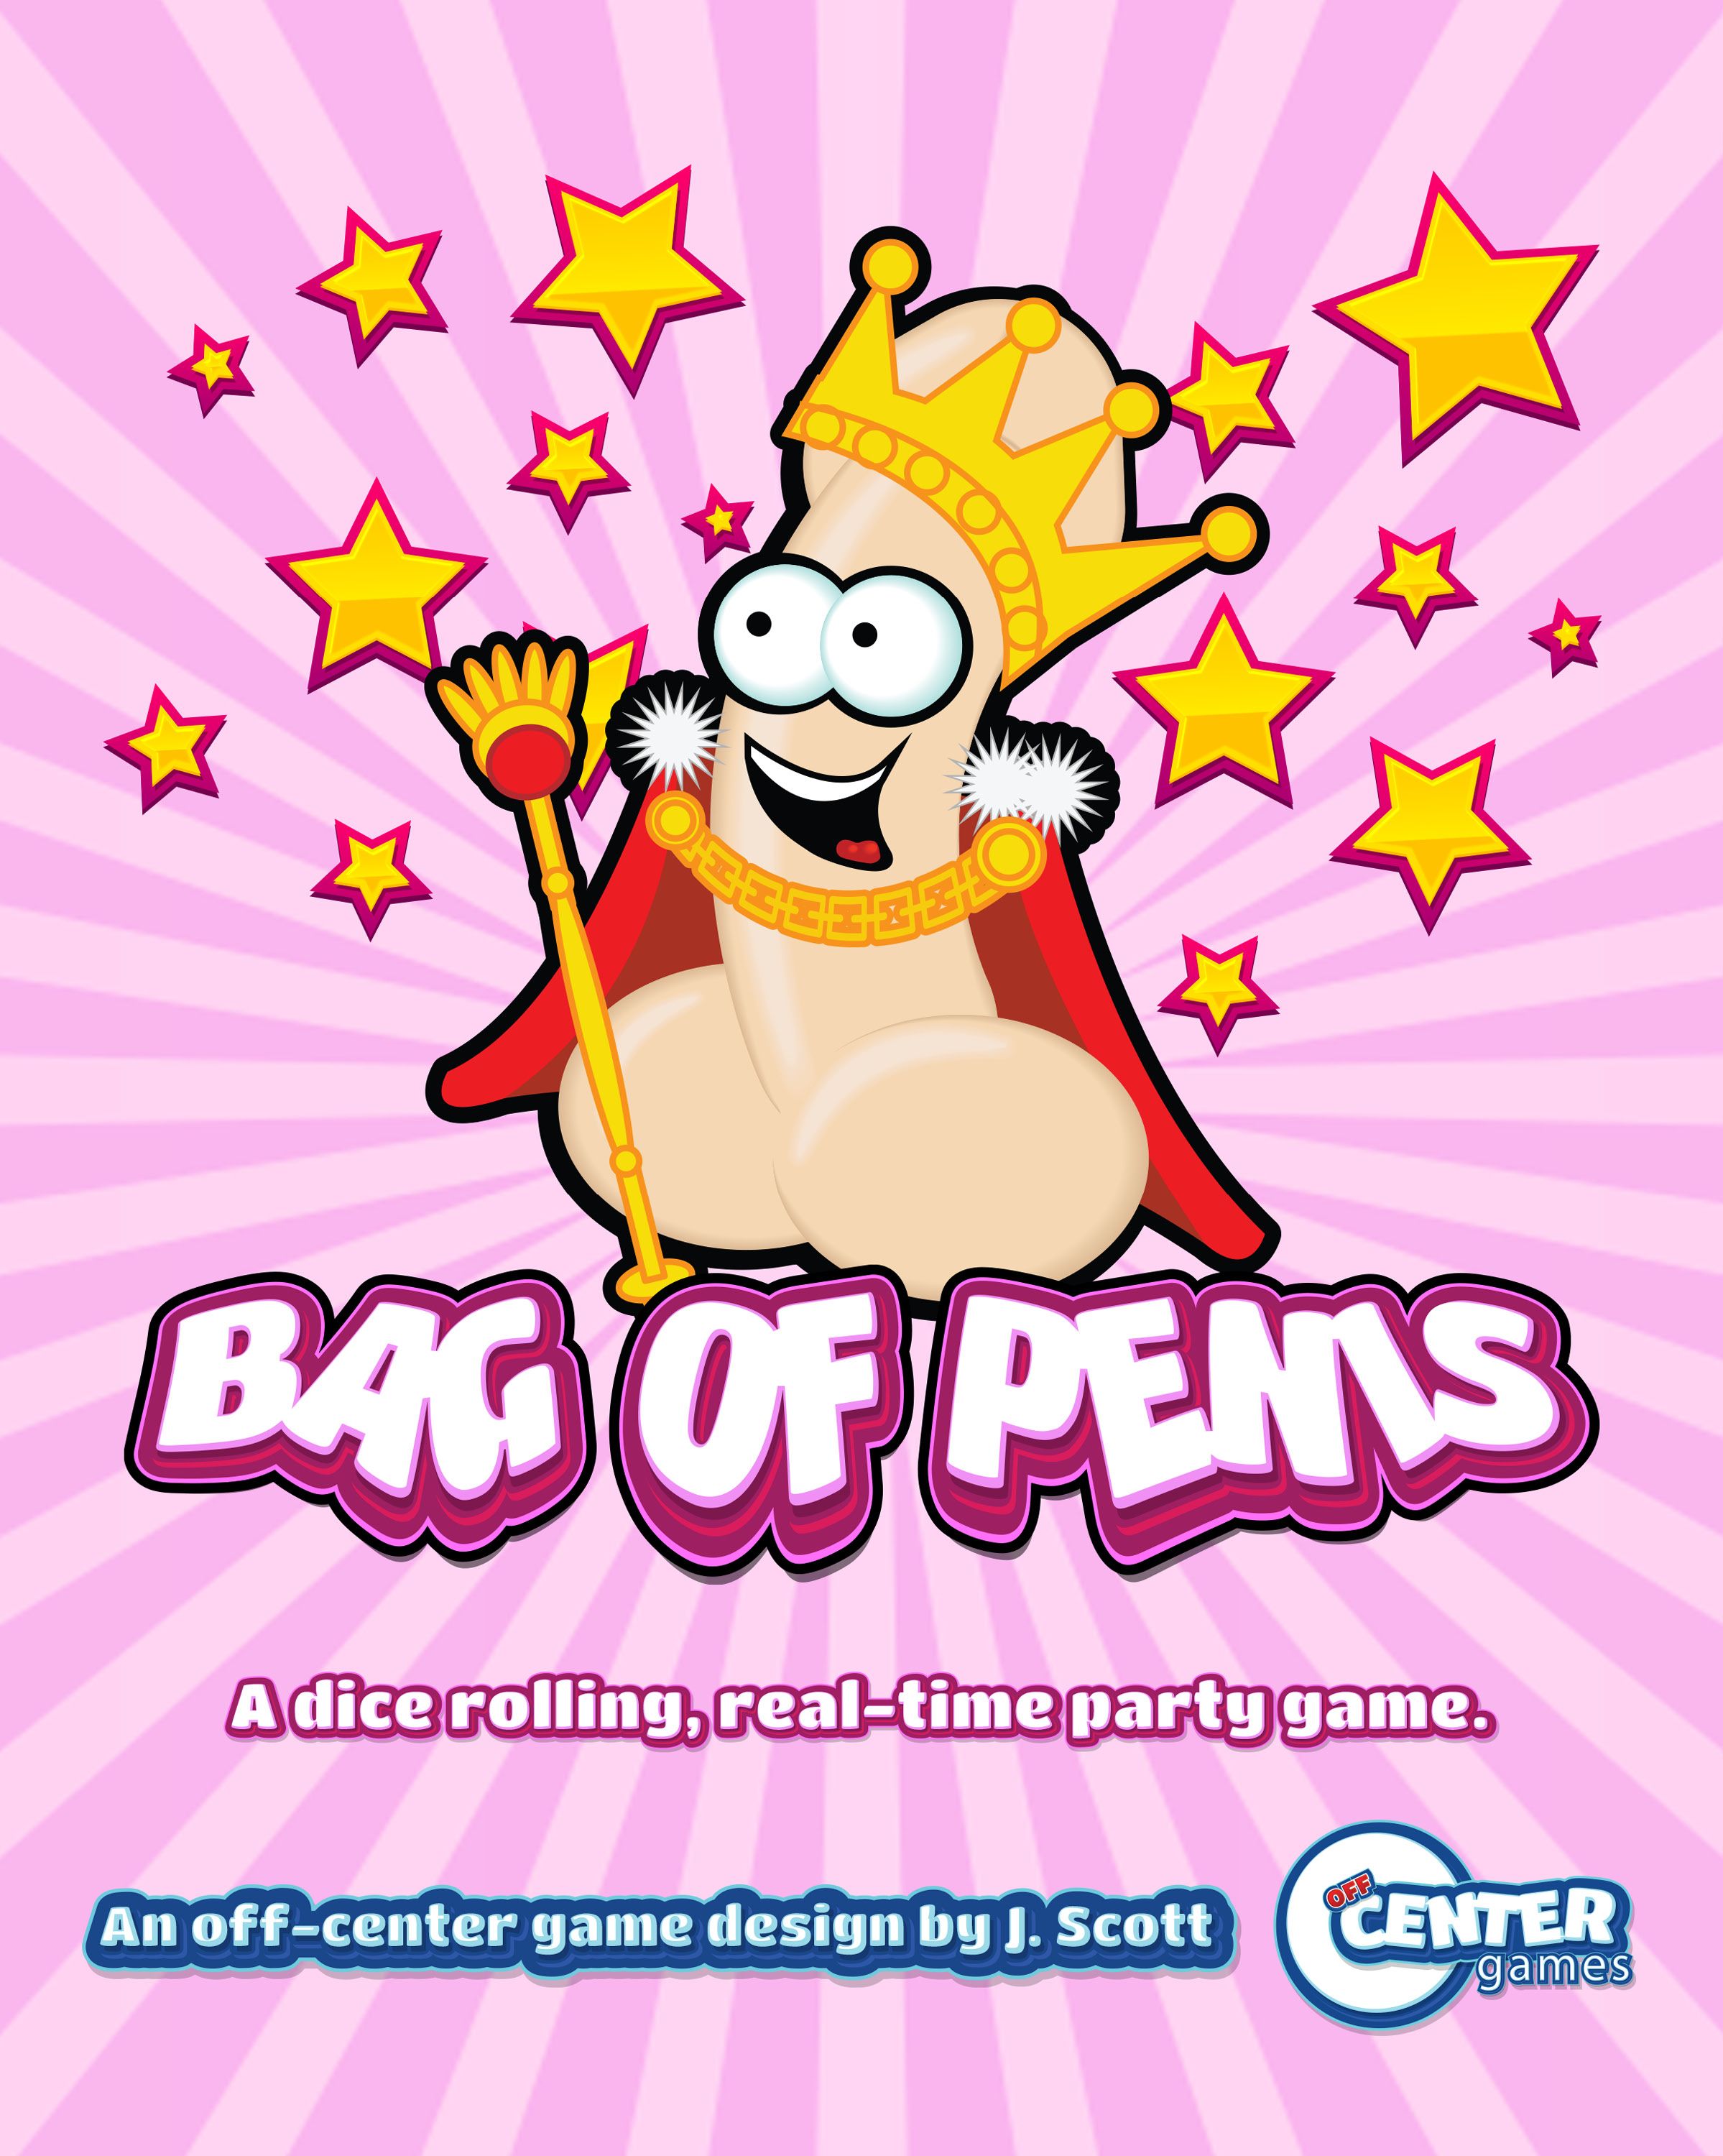 Bag of Penis